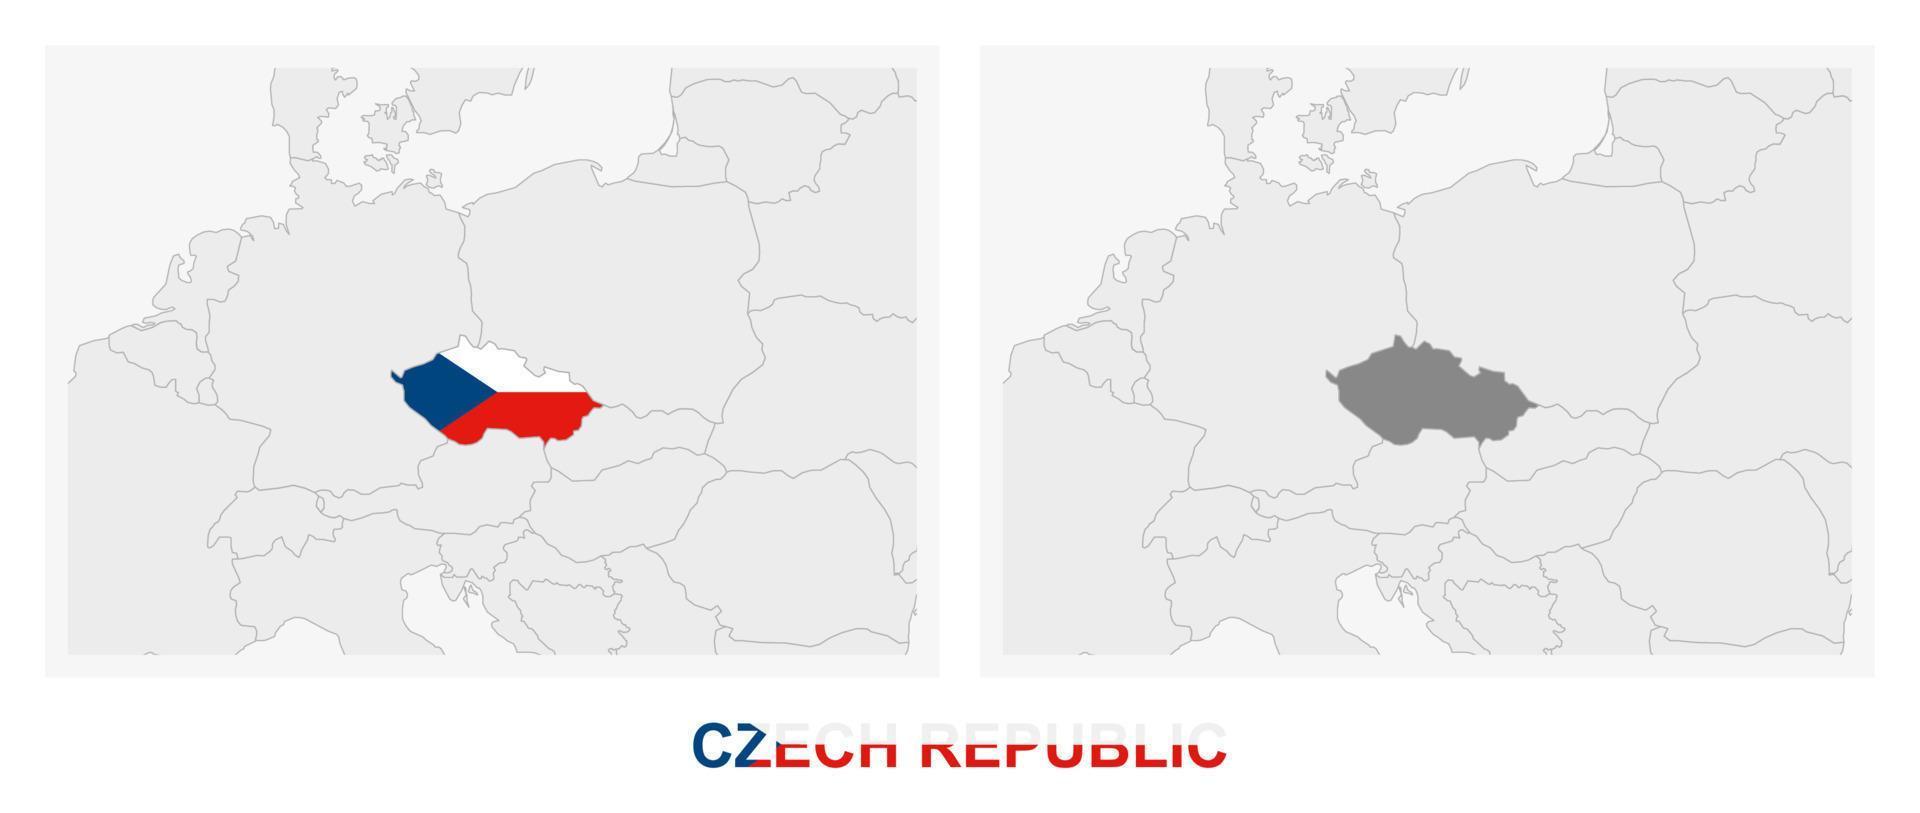 duas versões do mapa da república tcheca, com a bandeira da república tcheca e destacada em cinza escuro. vetor